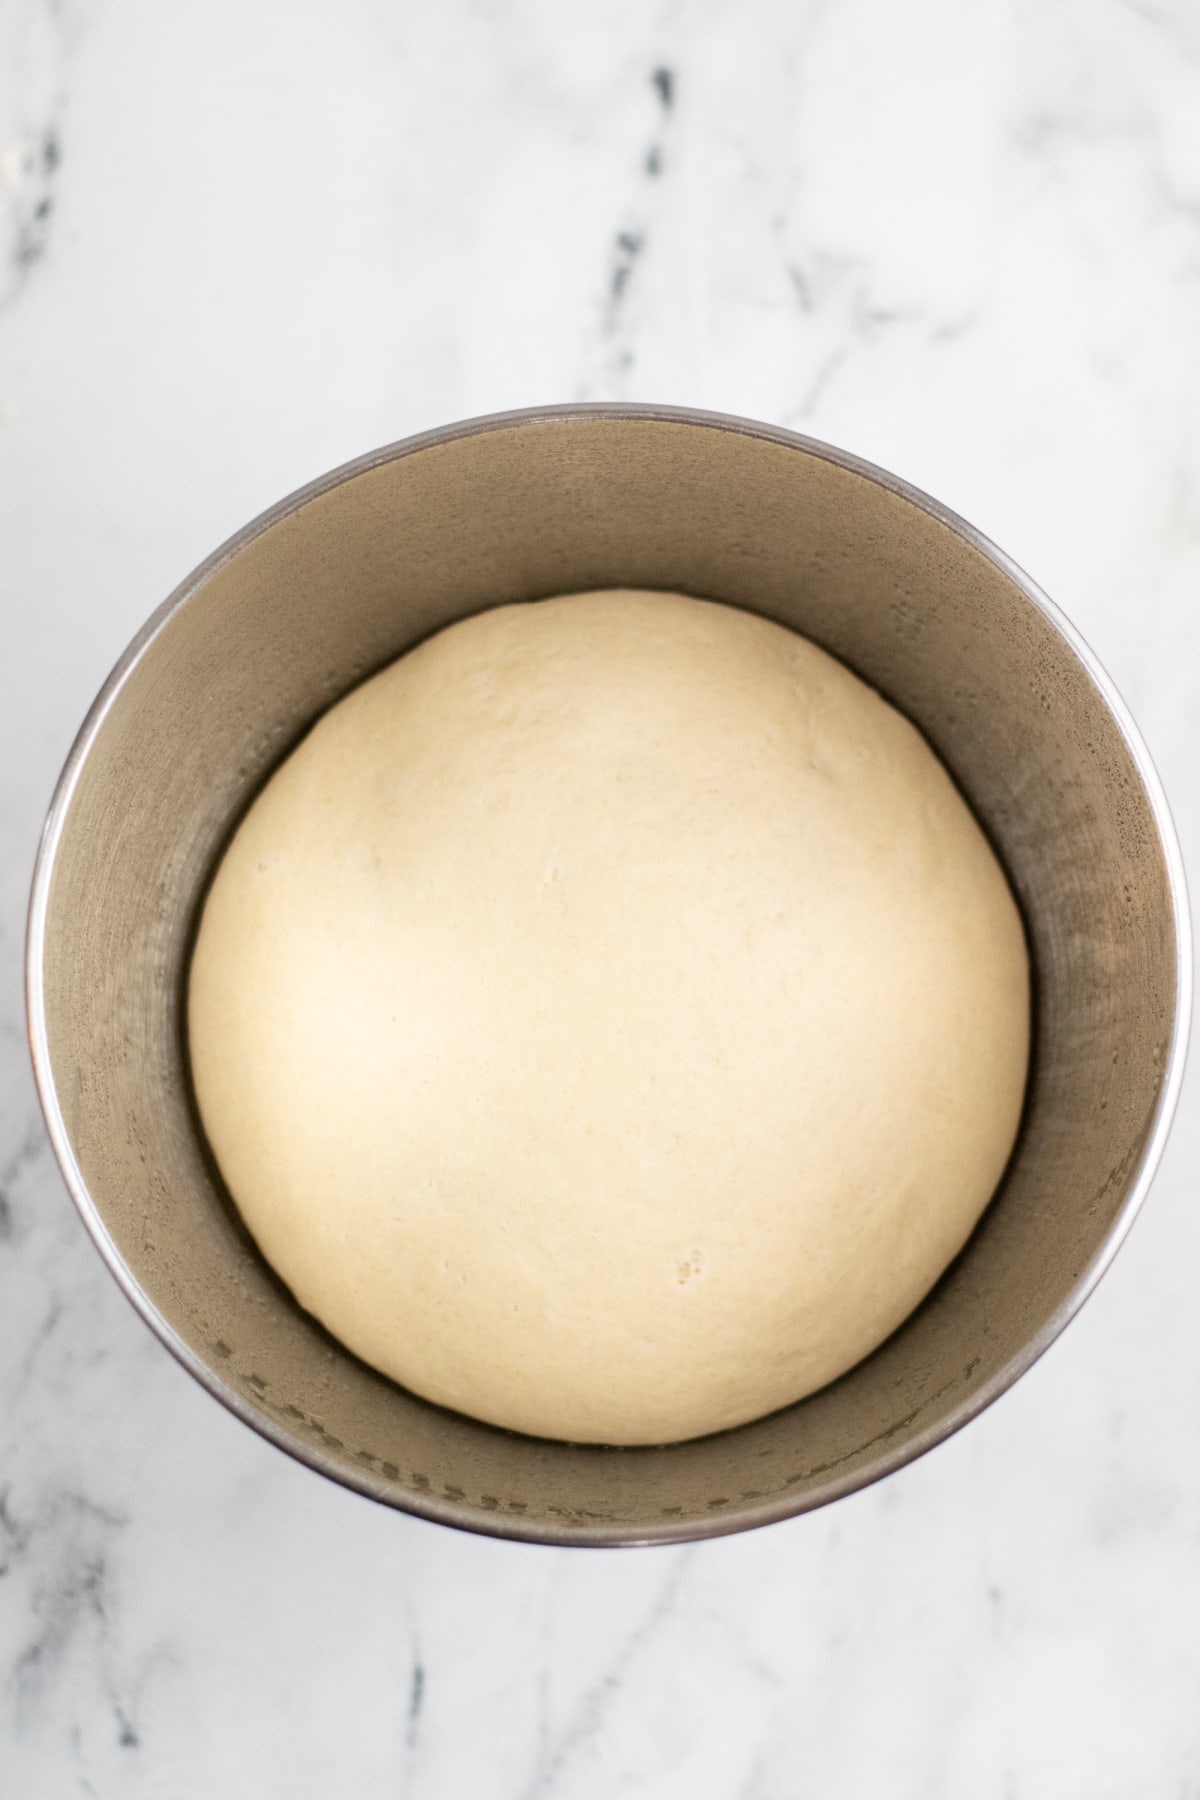 Pretzel dough rising